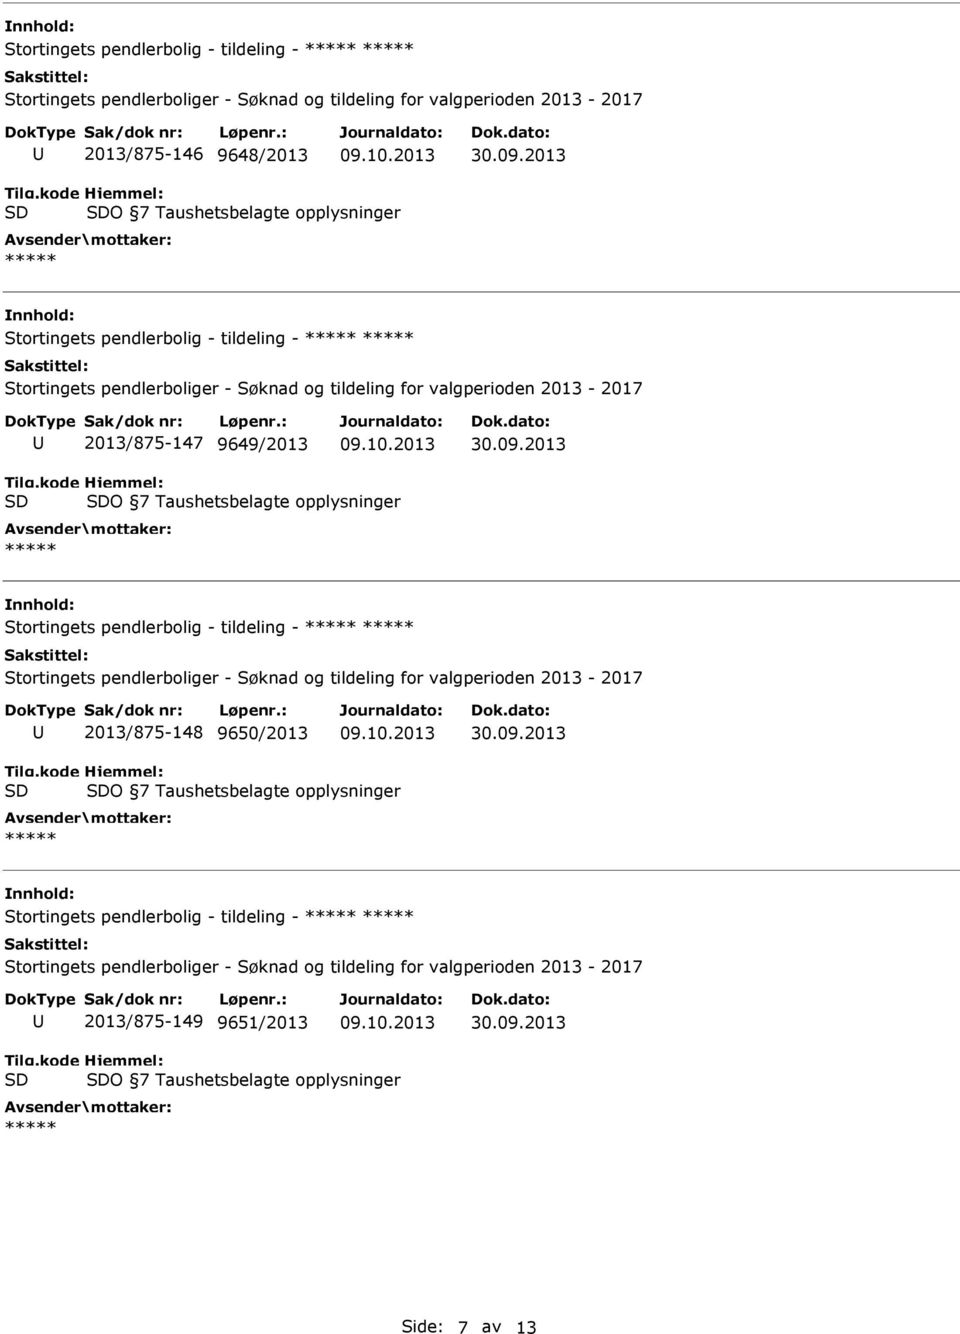 Stortingets pendlerbolig - tildeling - 2013/875-148 9650/2013 O 7 Taushetsbelagte opplysninger